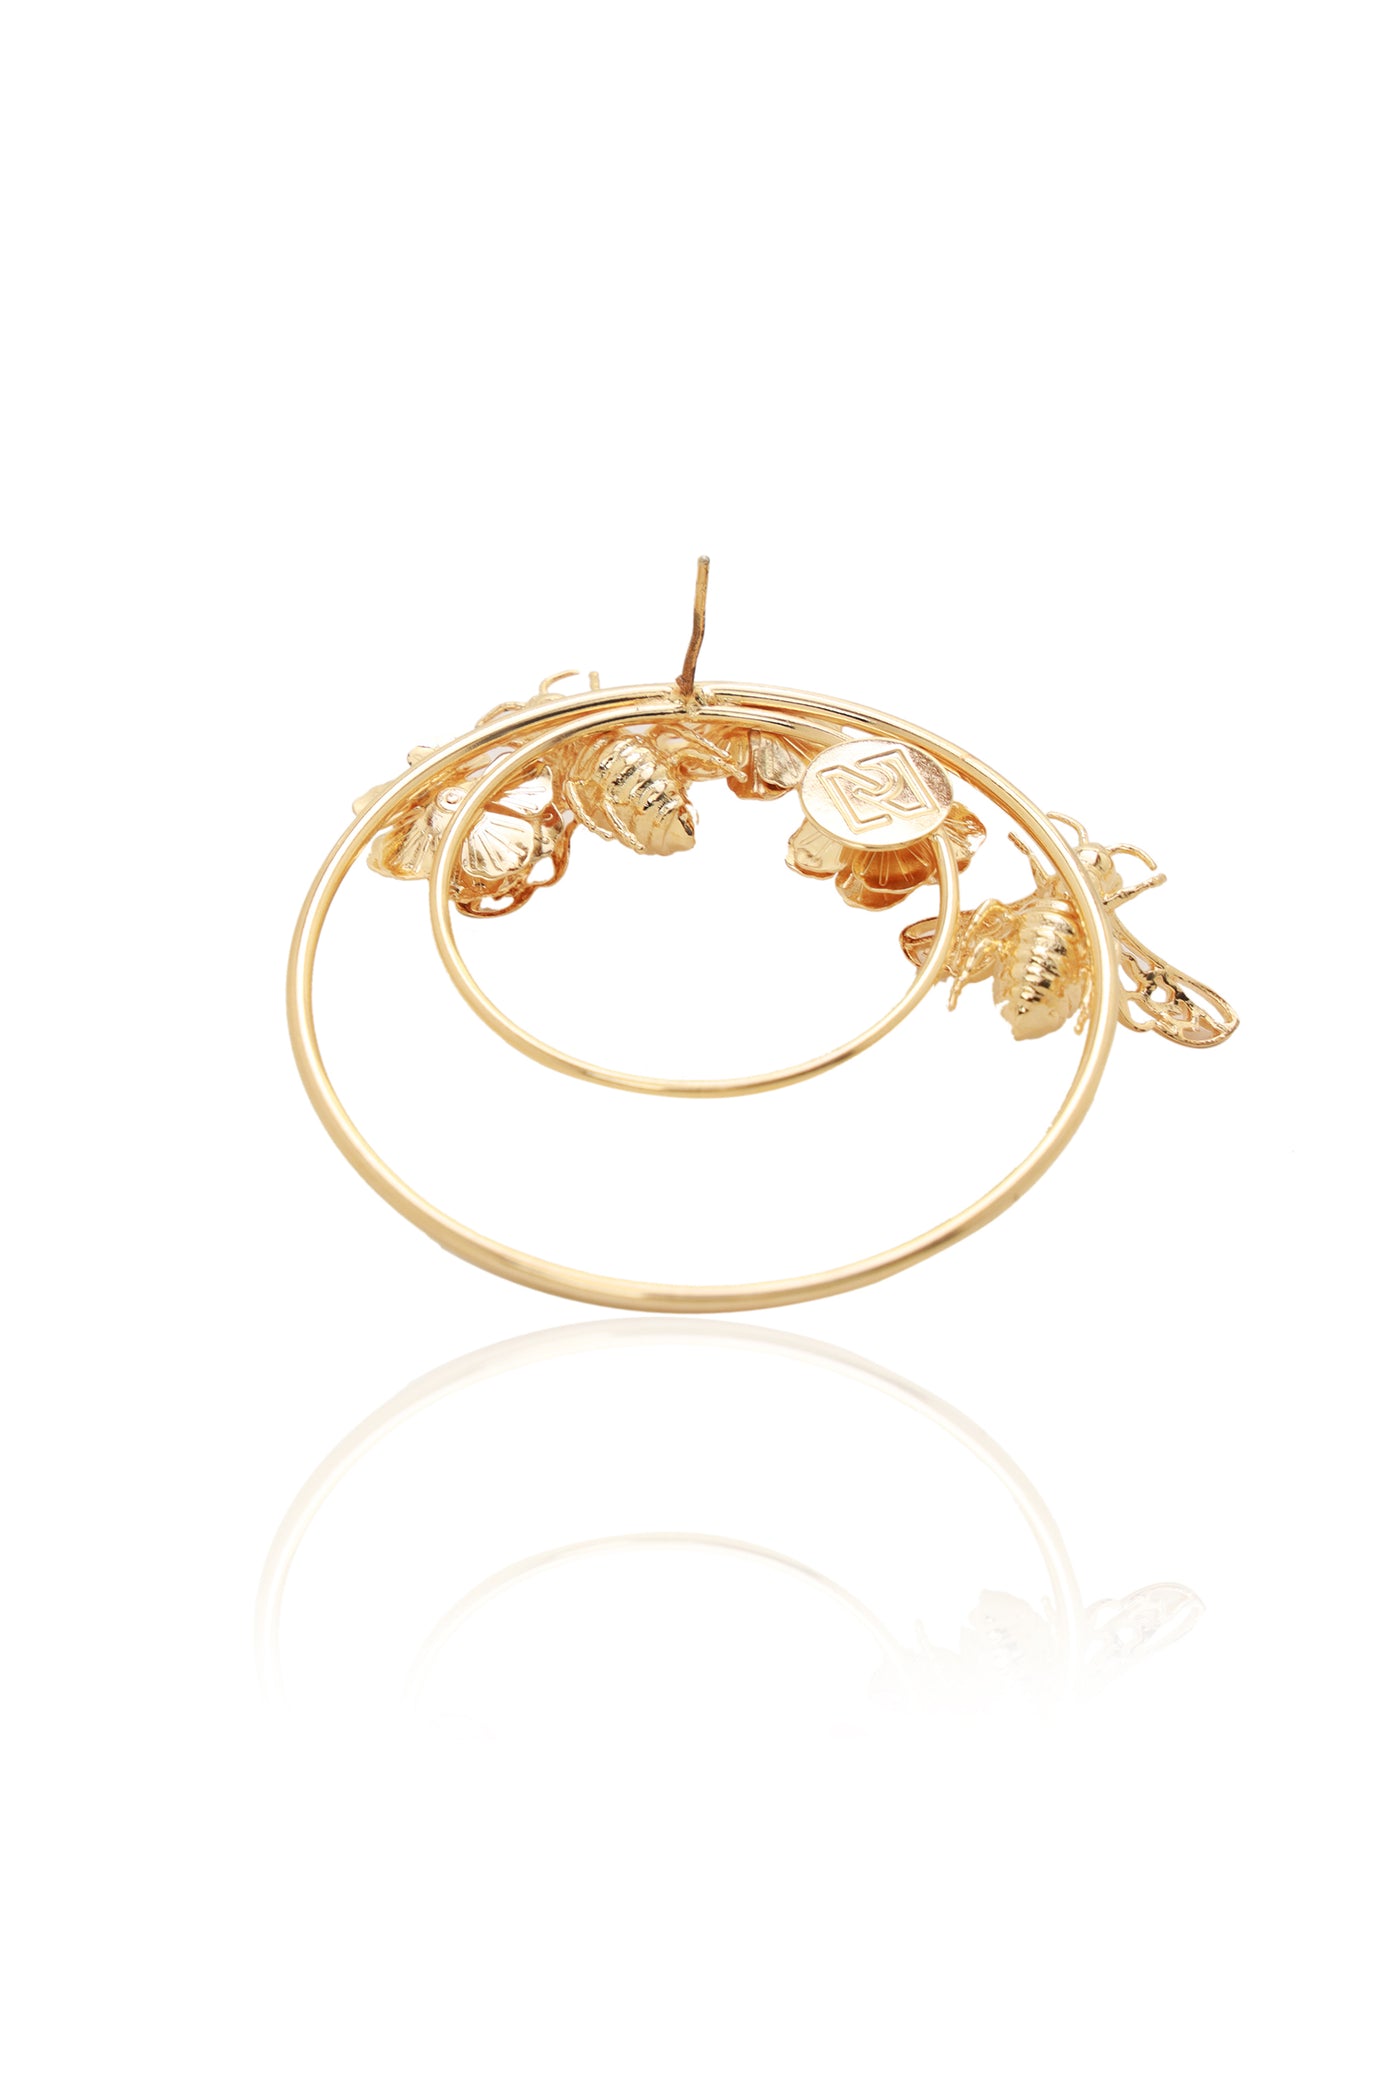 Ruhhette Le Fleur Hoops gold fashion jewellery earrings online shopping melange singapore indian designer wear